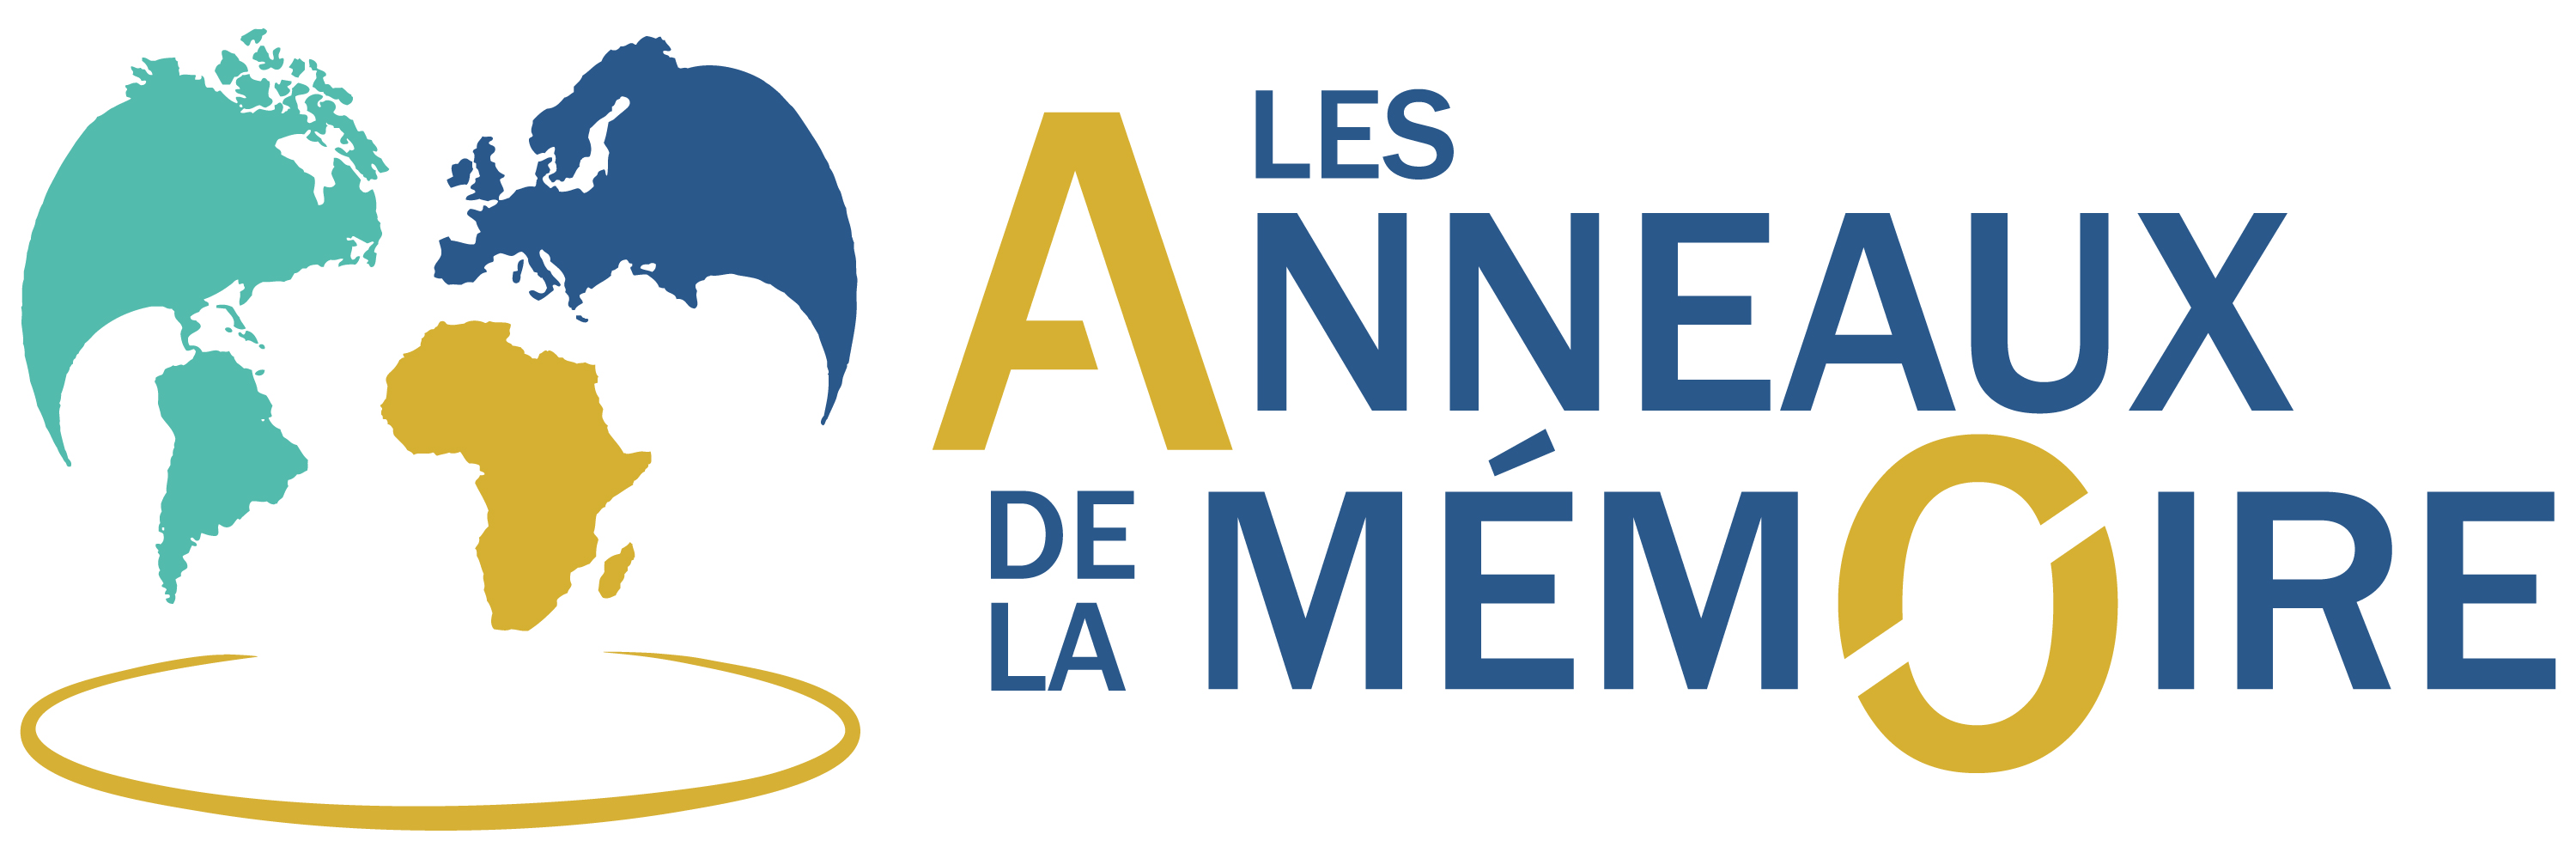 Les Anneaux Memoire Nantes